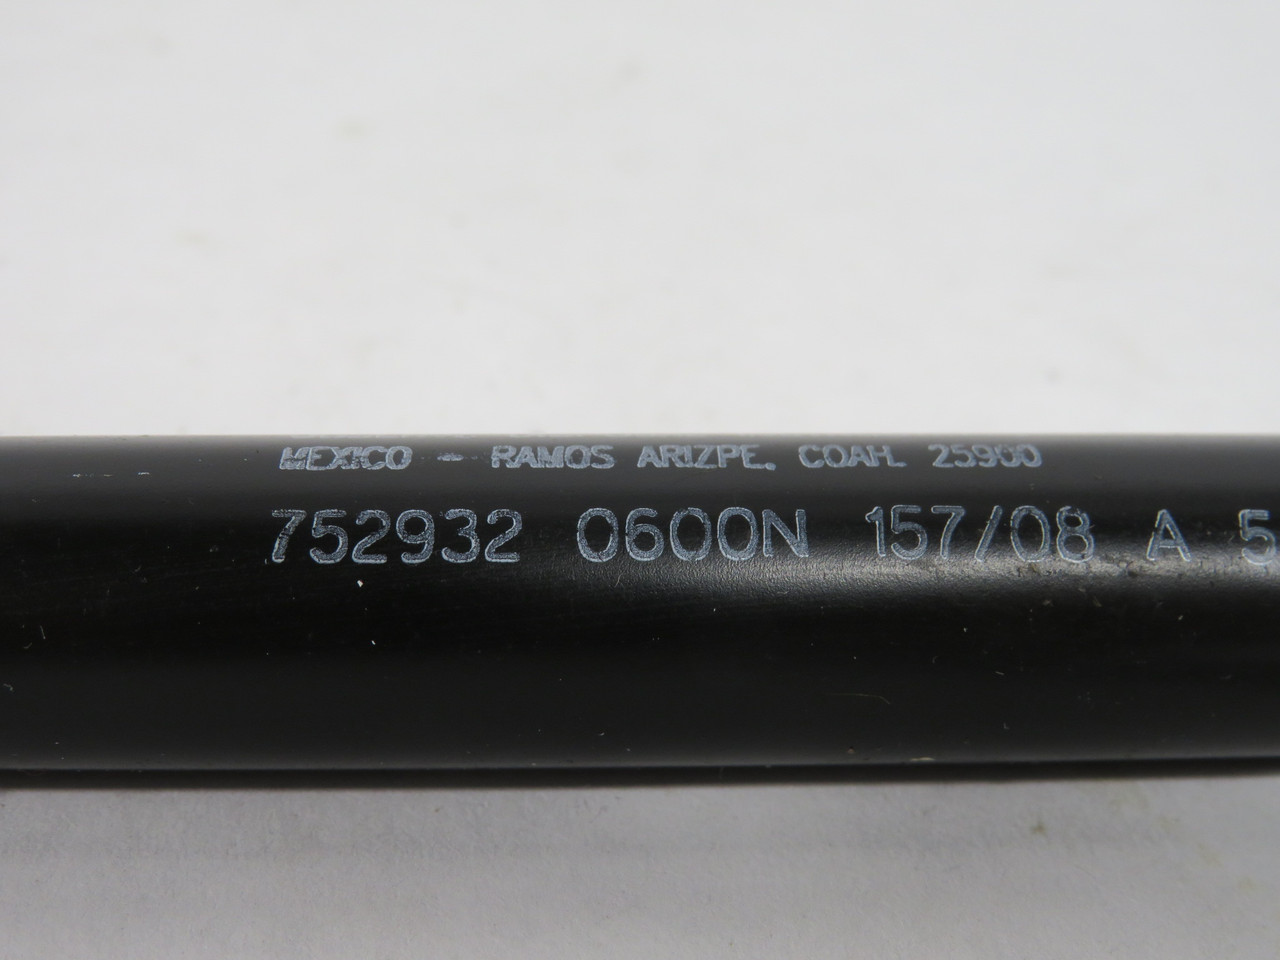 Stabilus 752932-0600N Gas Spring 8mm Rod Diameter 200mm Stroke USED